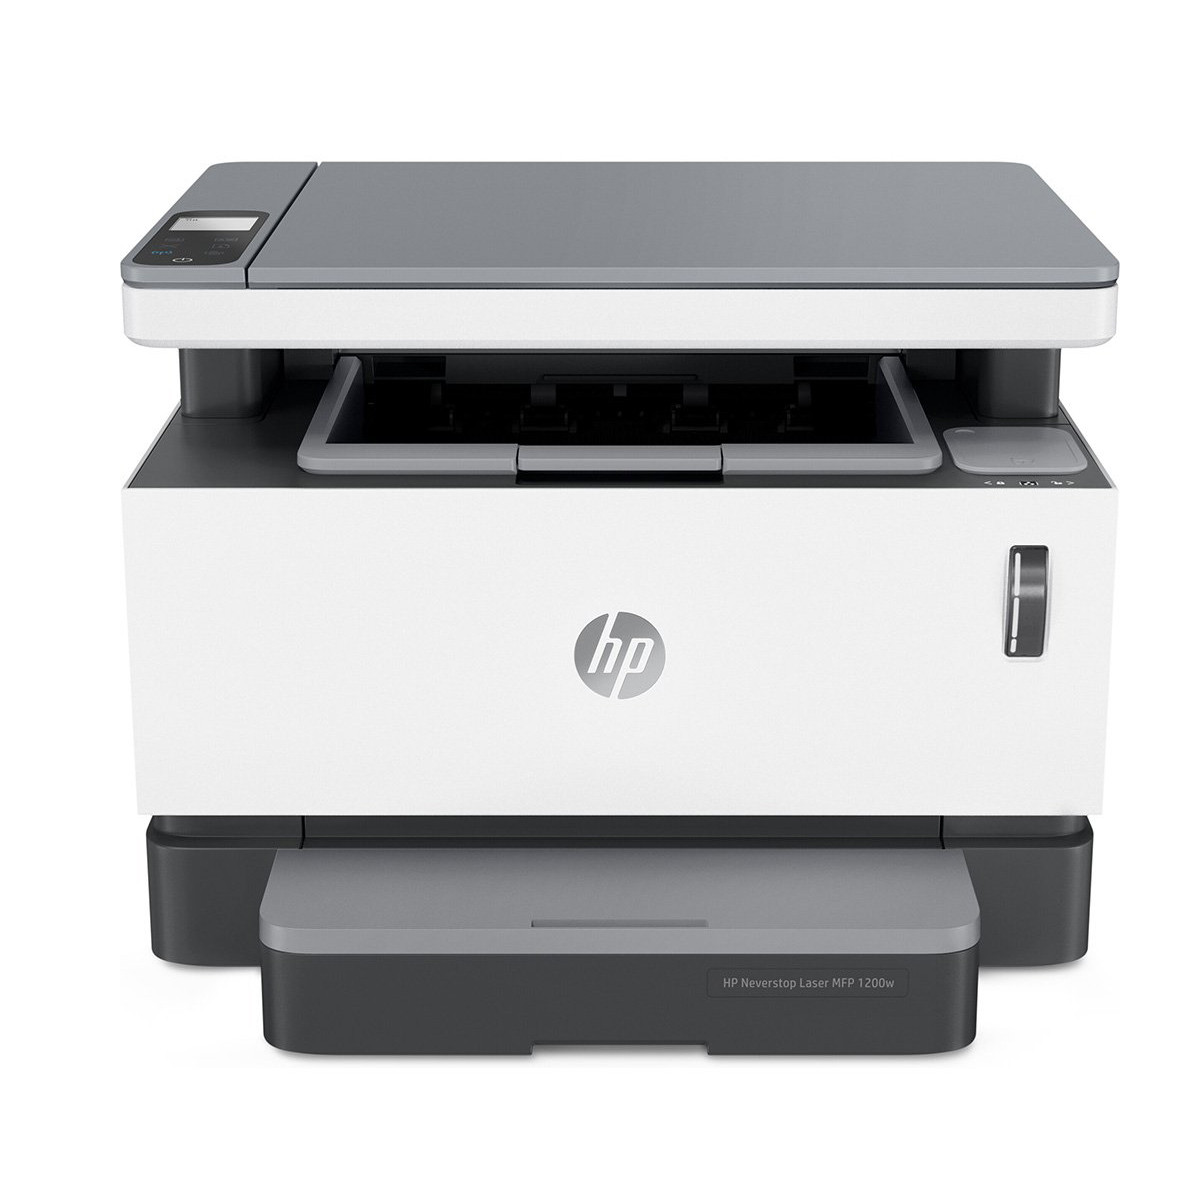 Impressora HP Neverstop 1200W 4RY26A Multifuncional com Conexão Wireless